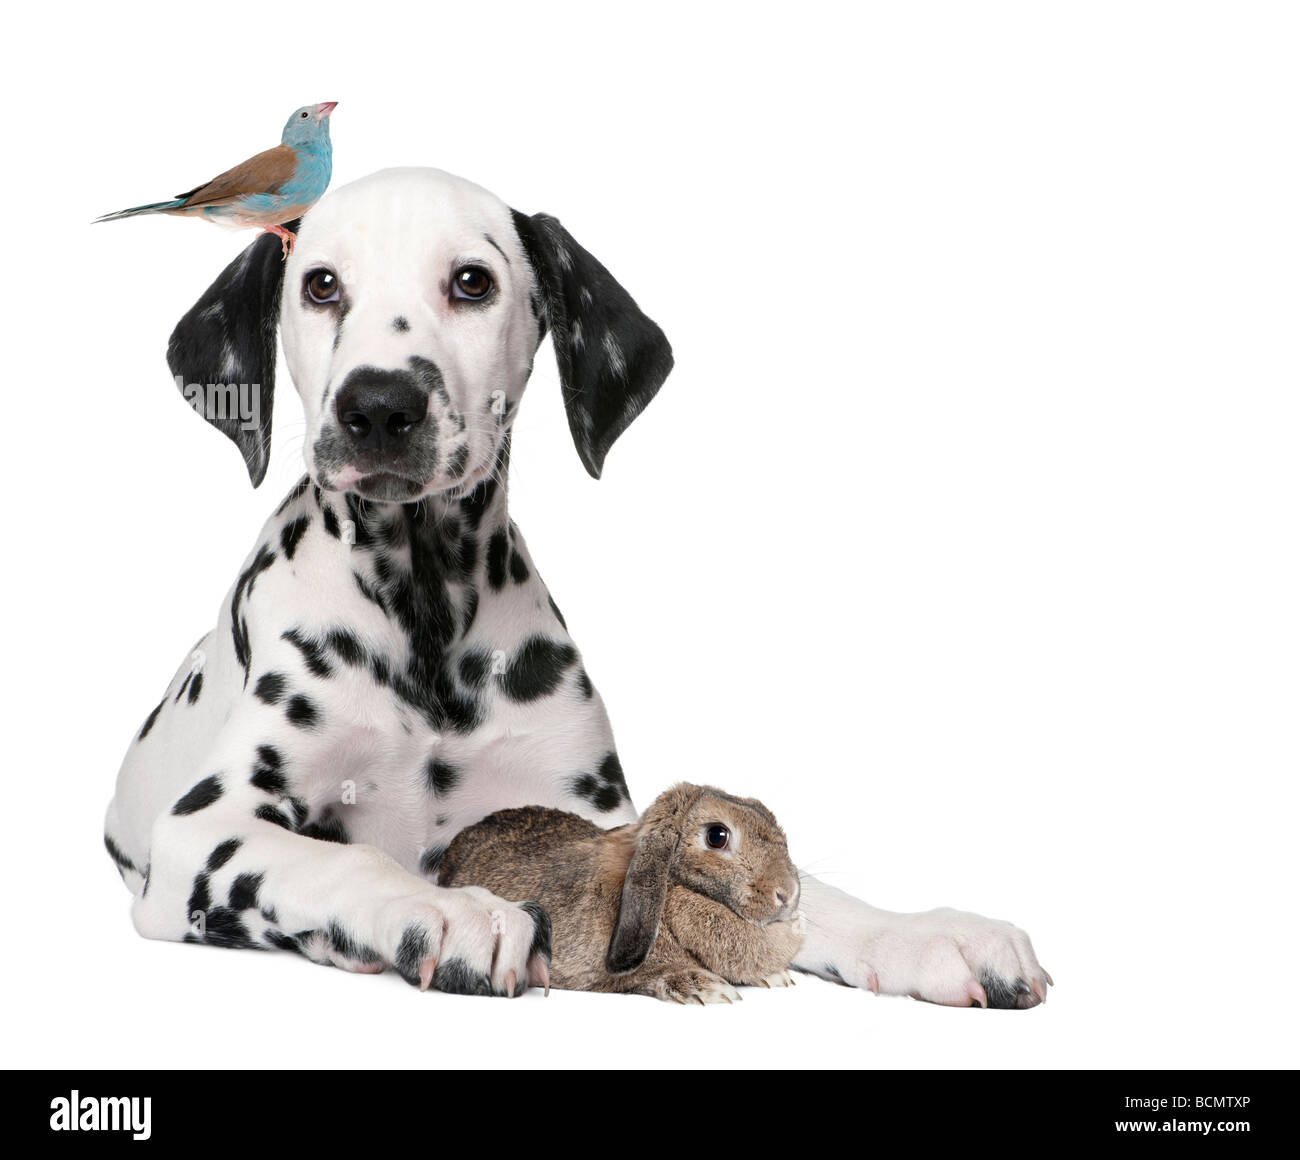 Gruppo di animali domestici, cucciolo di cane, bird, coniglio, di fronte a uno sfondo bianco, studio shot Foto Stock